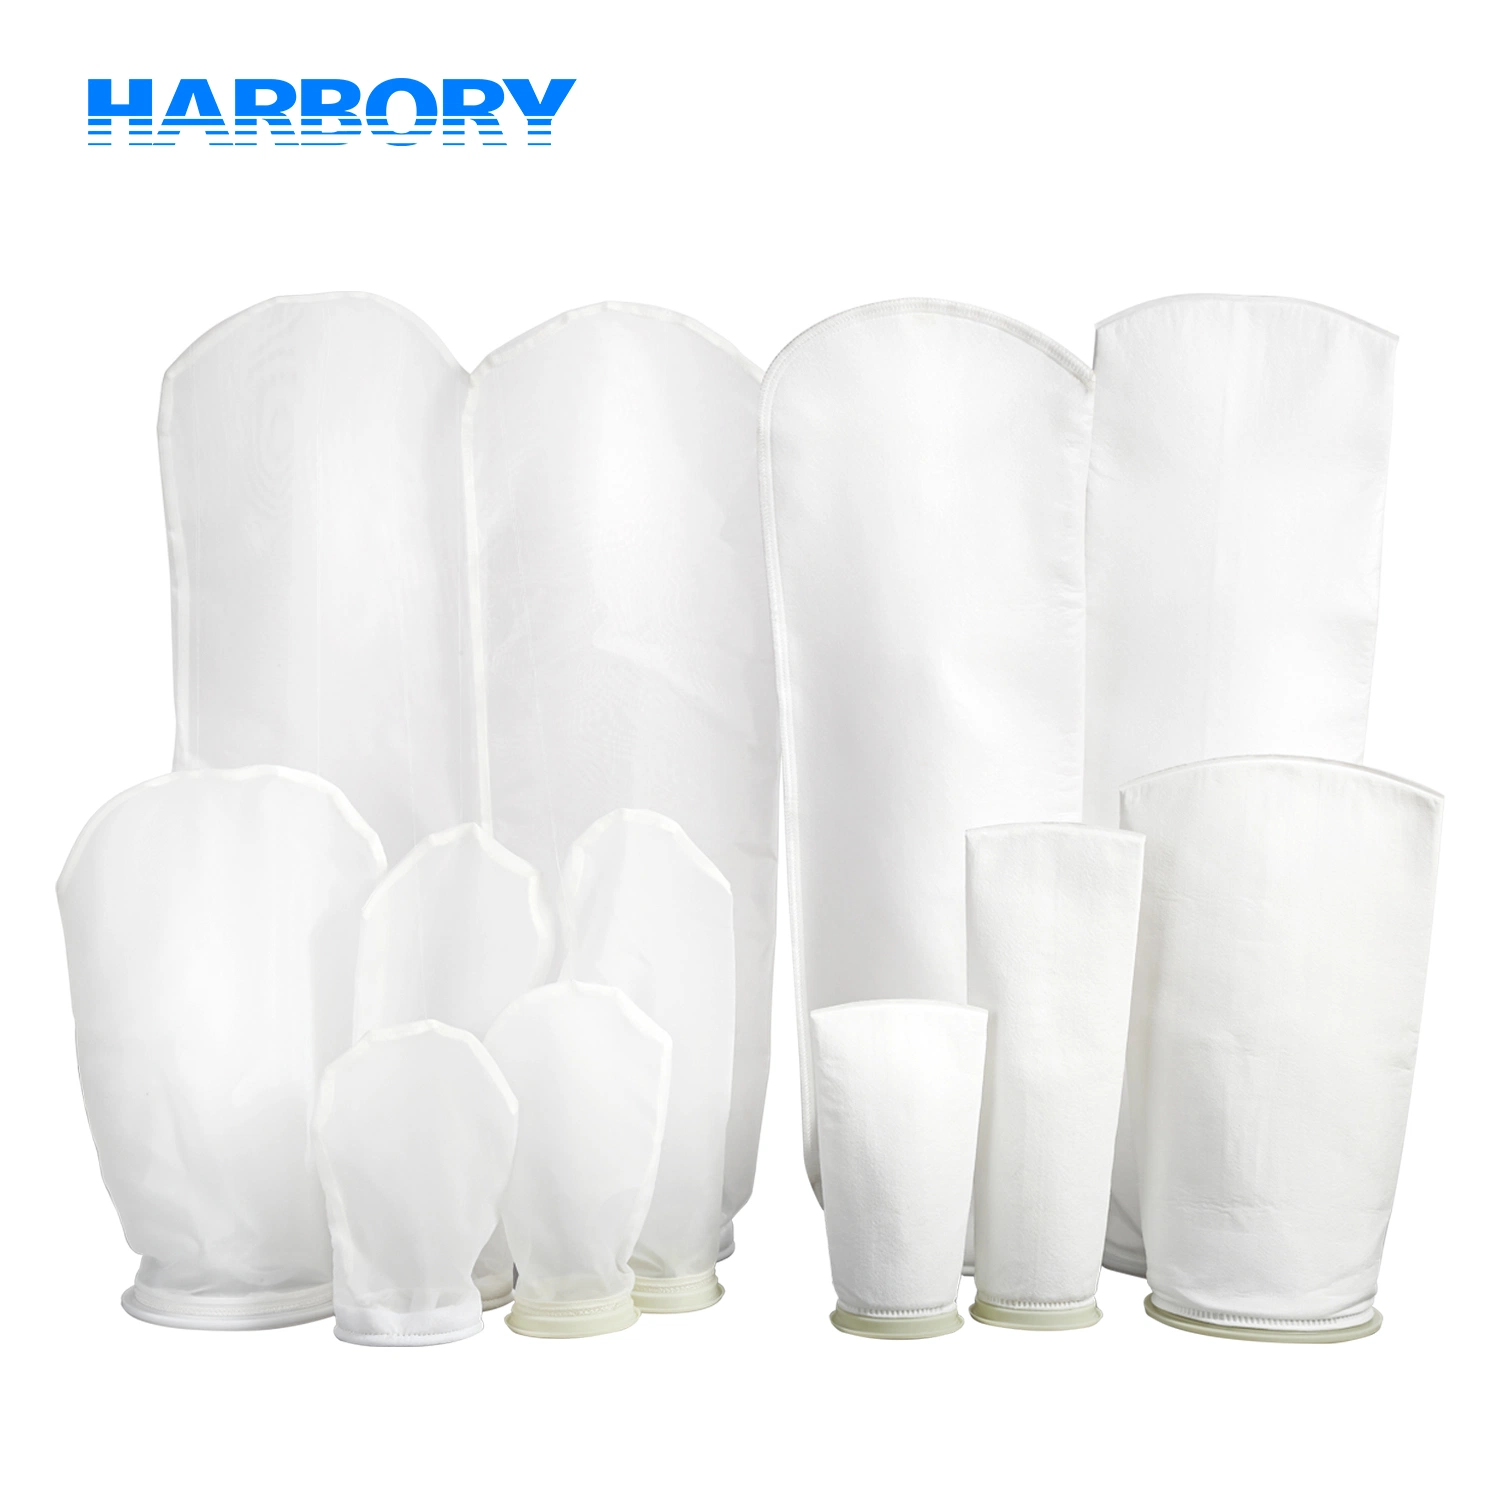 Harbory 1 5 10 25 50 100 150 Micron Sac de filtre en nylon liquide PP PE Chaussette de filtre d'aquarium Sac de filtre de l'industrie de l'eau pour la filtration